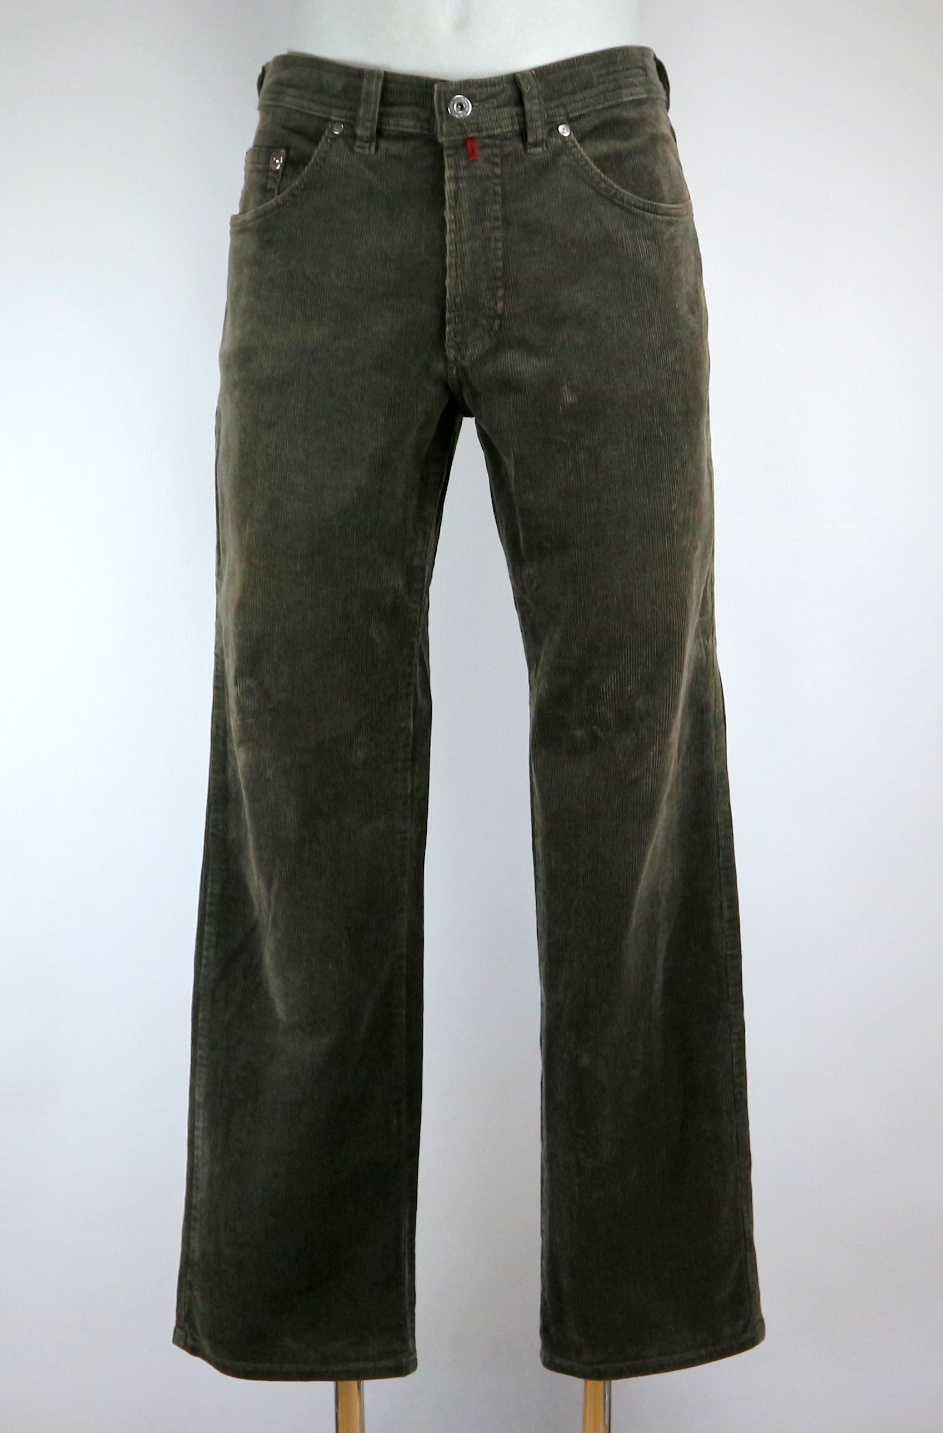 Pierre Cardin Dijon spodnie sztruksy W32 L32 pas 2 x 43/45 cm